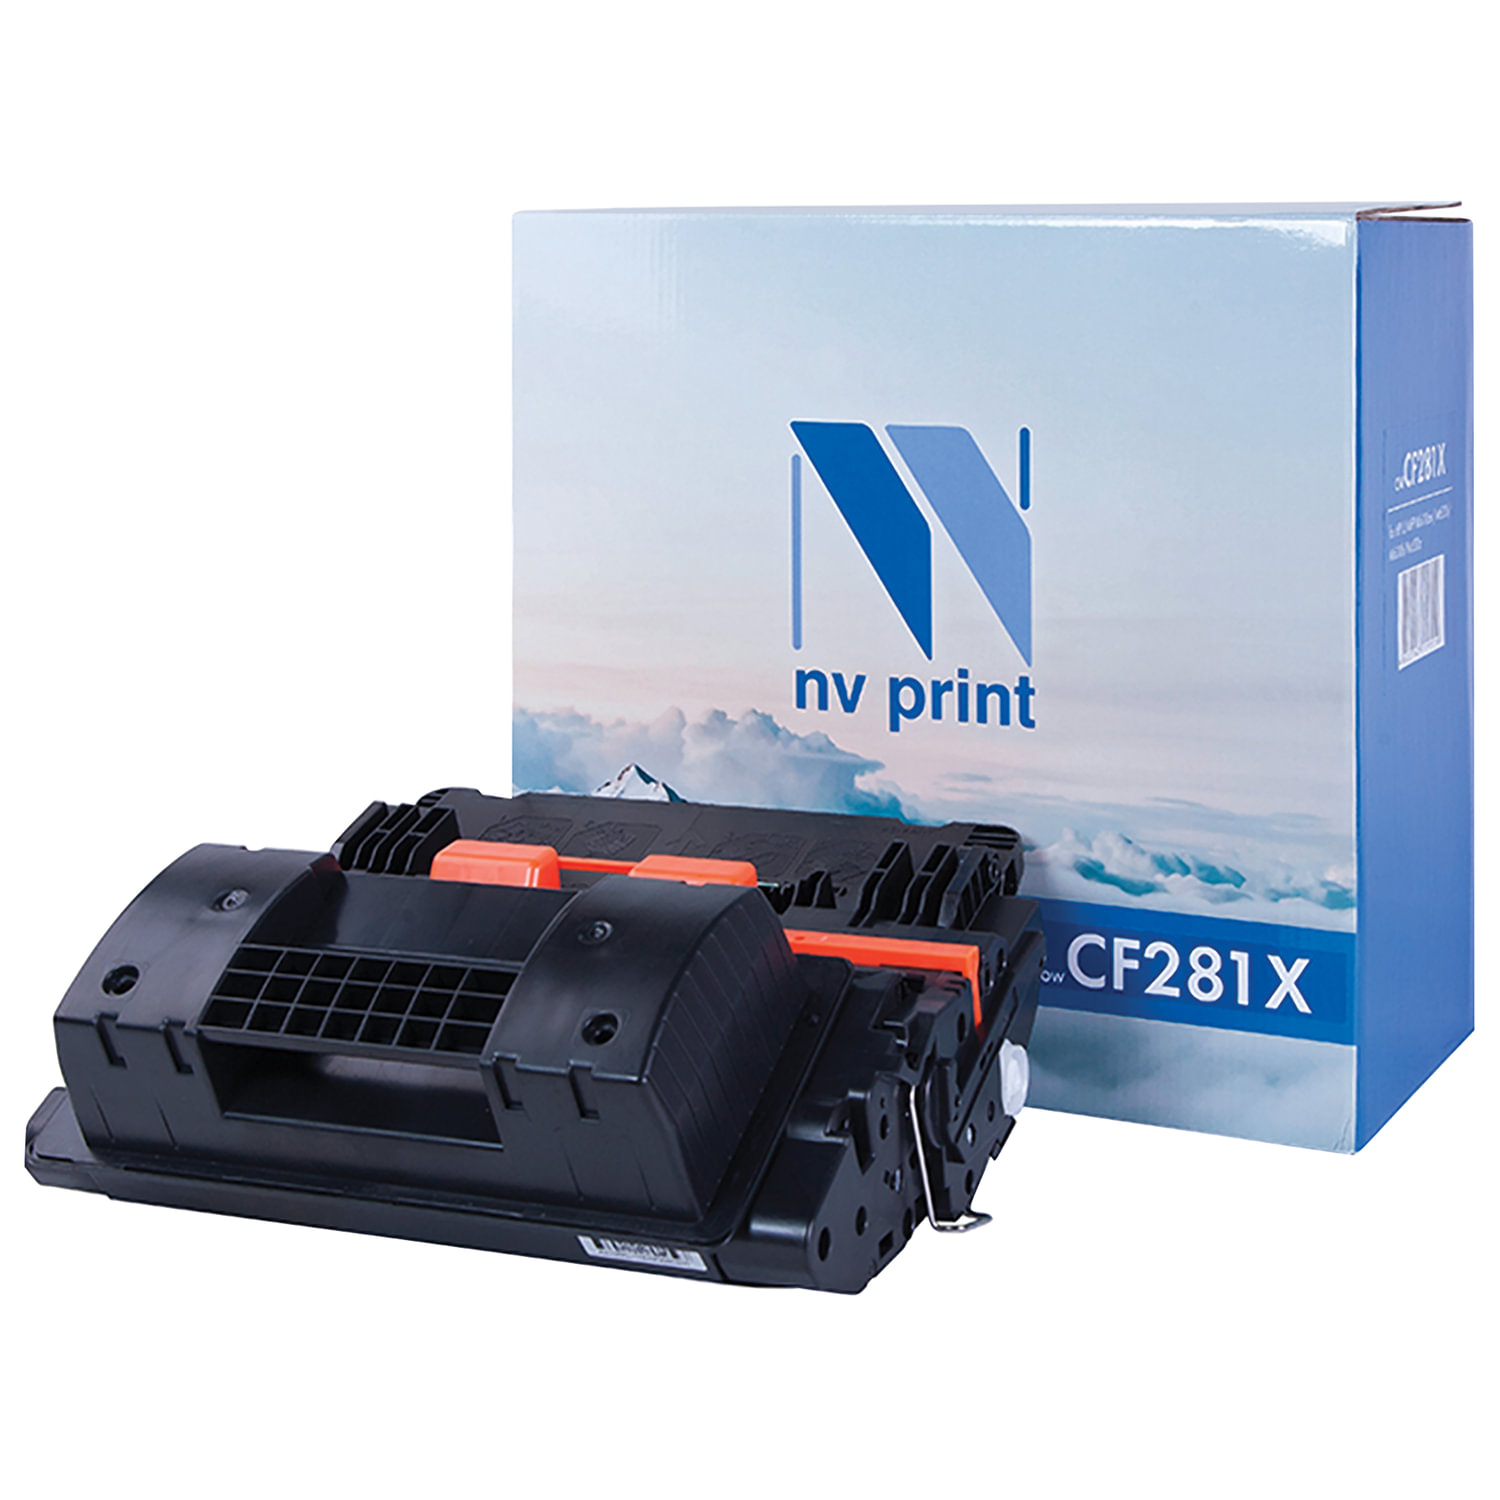  NV PRINT NV-CF281X